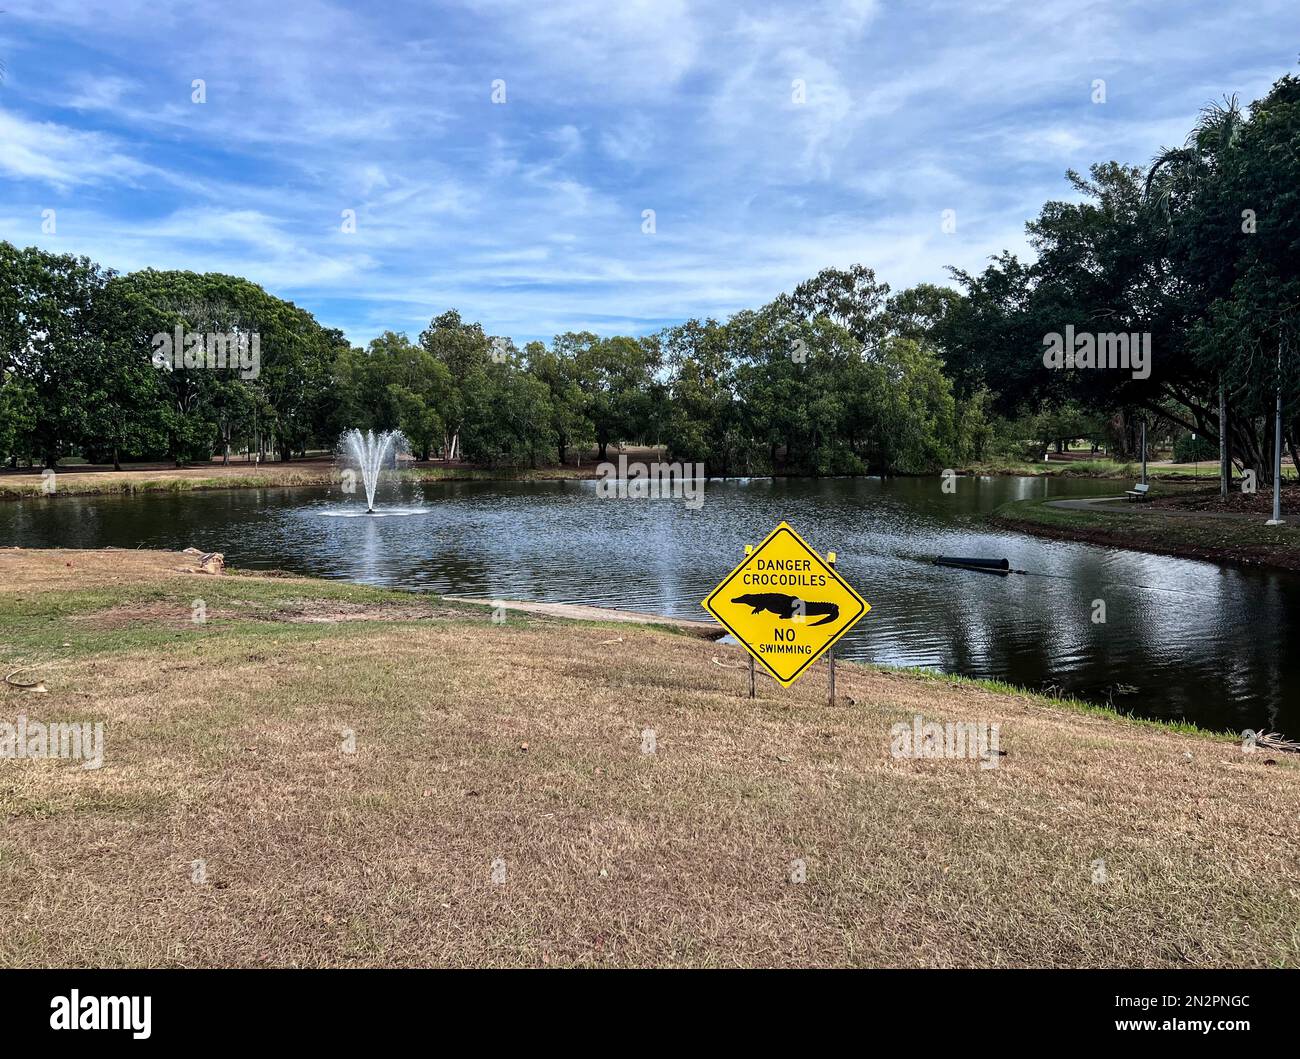 Danger Crocodiles pas de signe de natation près d'un lac, Palmerston, territoire du Nord, Australie Banque D'Images